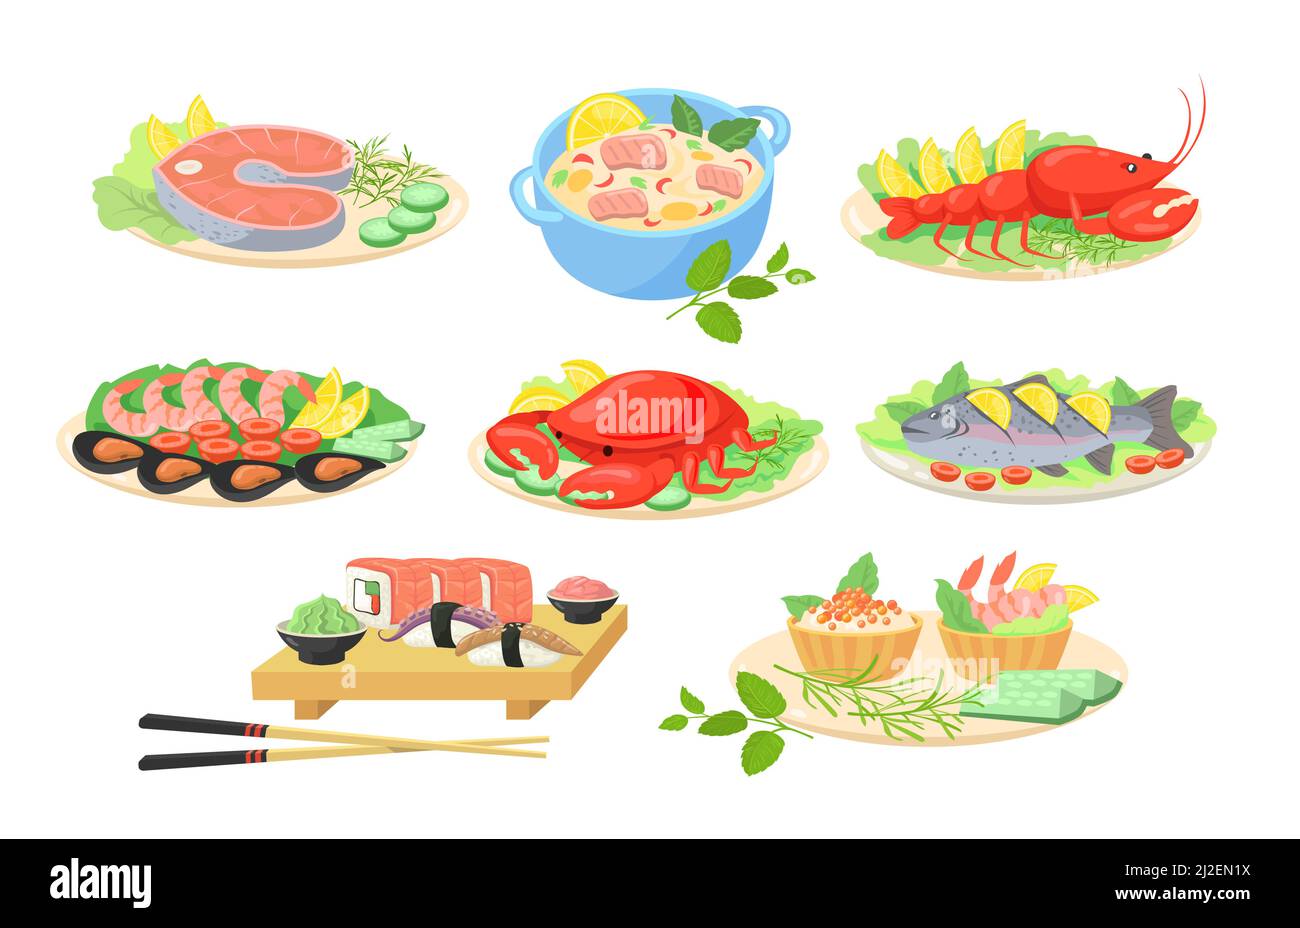 Kreative festliche Meeresfrüchte Gerichte flache Bilder für Web-Design gesetzt. Cartoon-Fische, Garnelen, Lachs, Krabben und Hummer werden auf isolierten vektorkranken Tellern serviert Stock Vektor